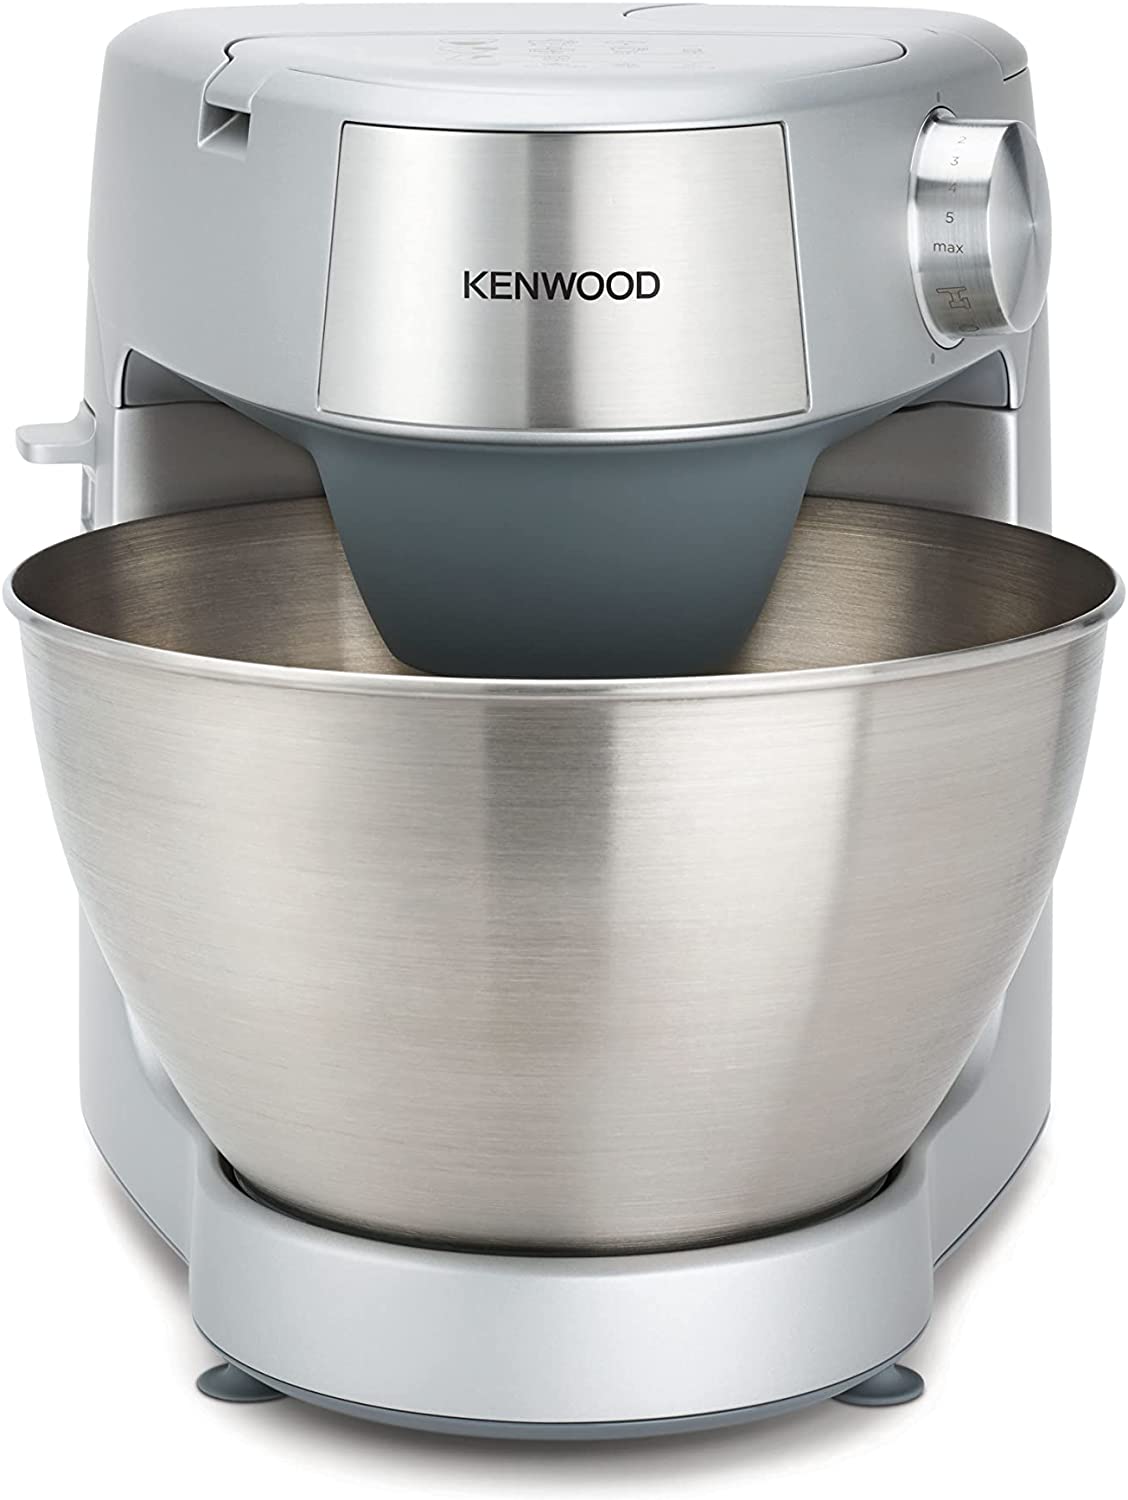 KENWOOD Stand Mixer Kitchen Machine PROSPERO+ 900W with 4.3L Stainless Steel Bowl محضرة طعام بقوة 900 واط من كينوود